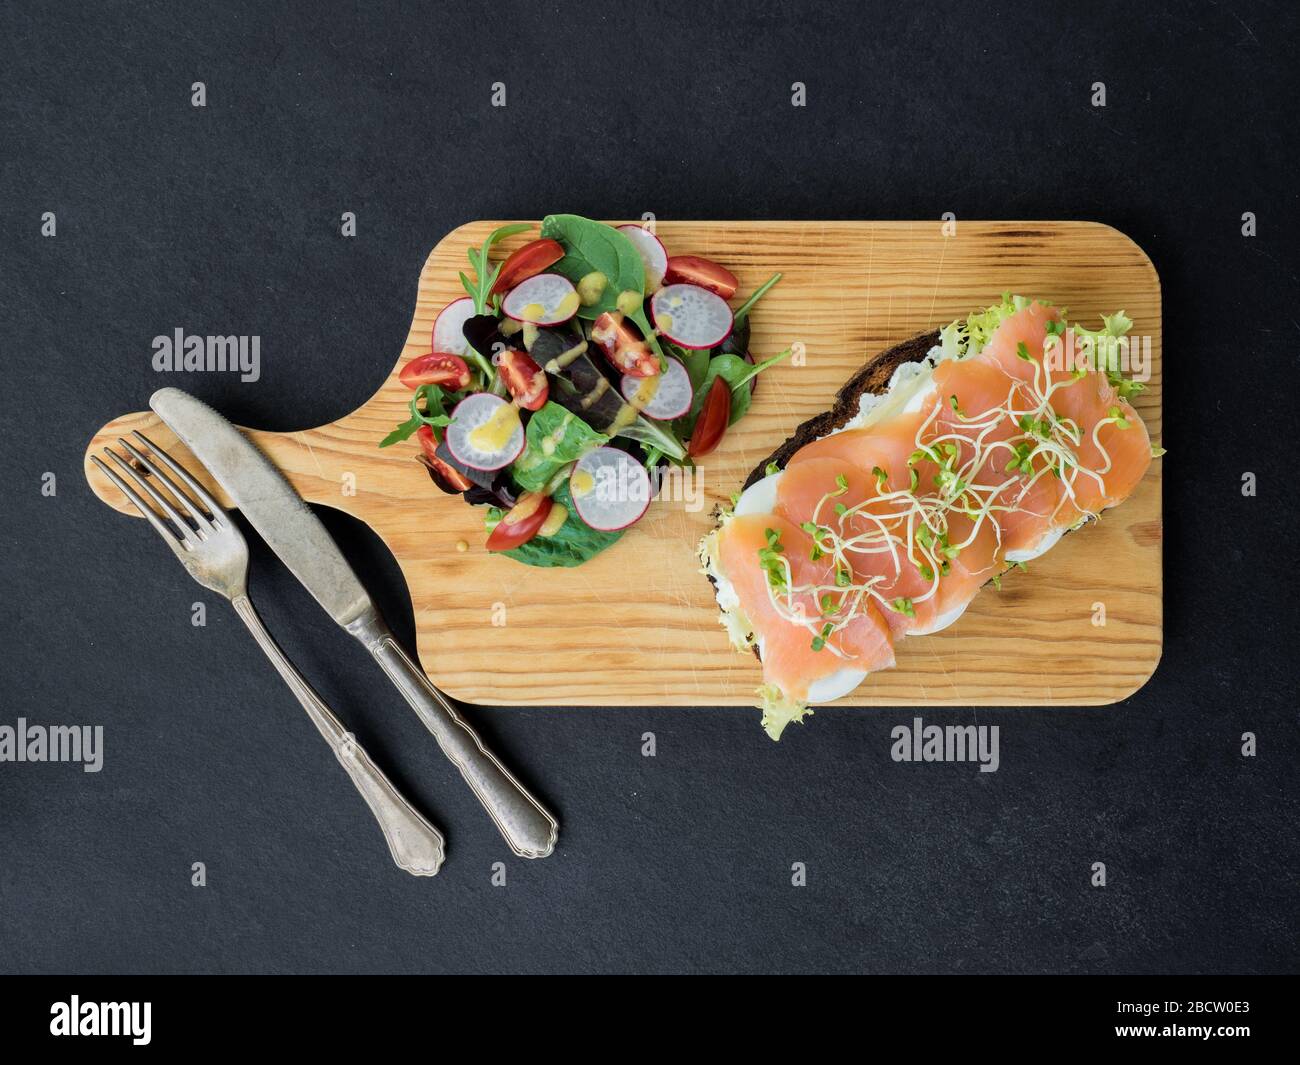 Bruschetta di salmone affumicato e insalata su una tavola meravigliosa. Vista dall'alto Foto Stock